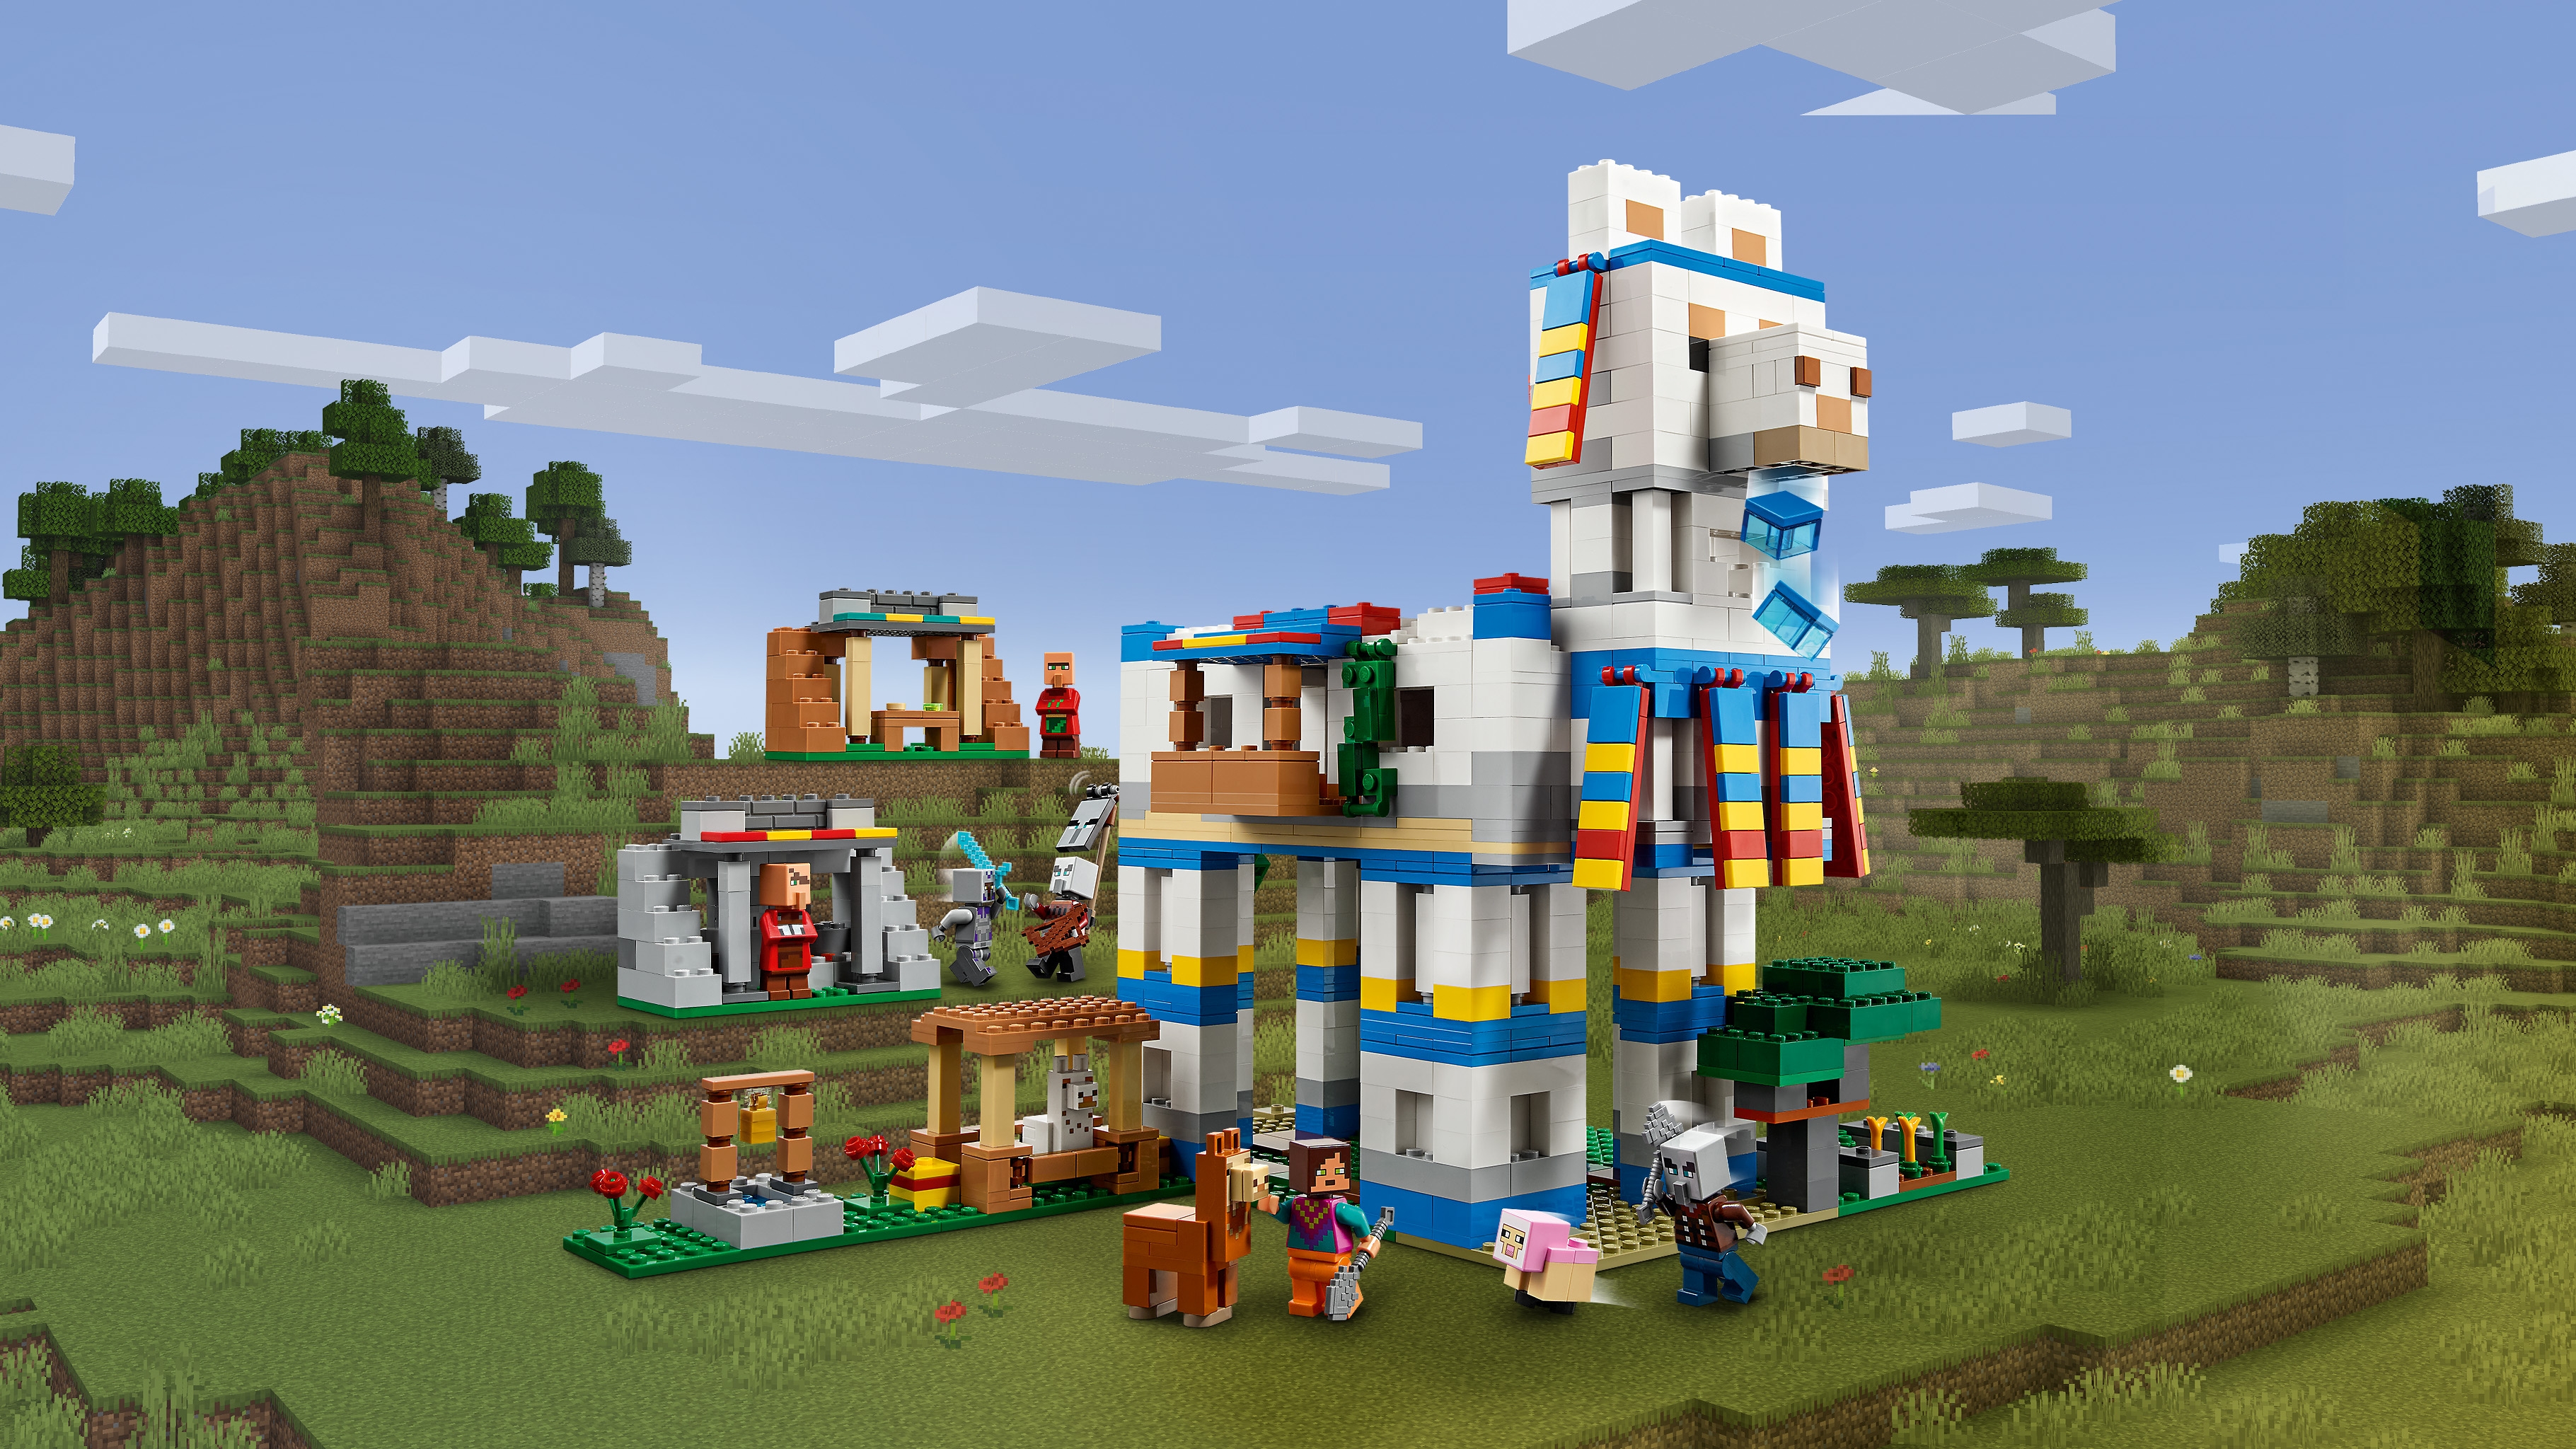 ラマの村 21188 - レゴ®マインクラフト セット - LEGO.comキッズ